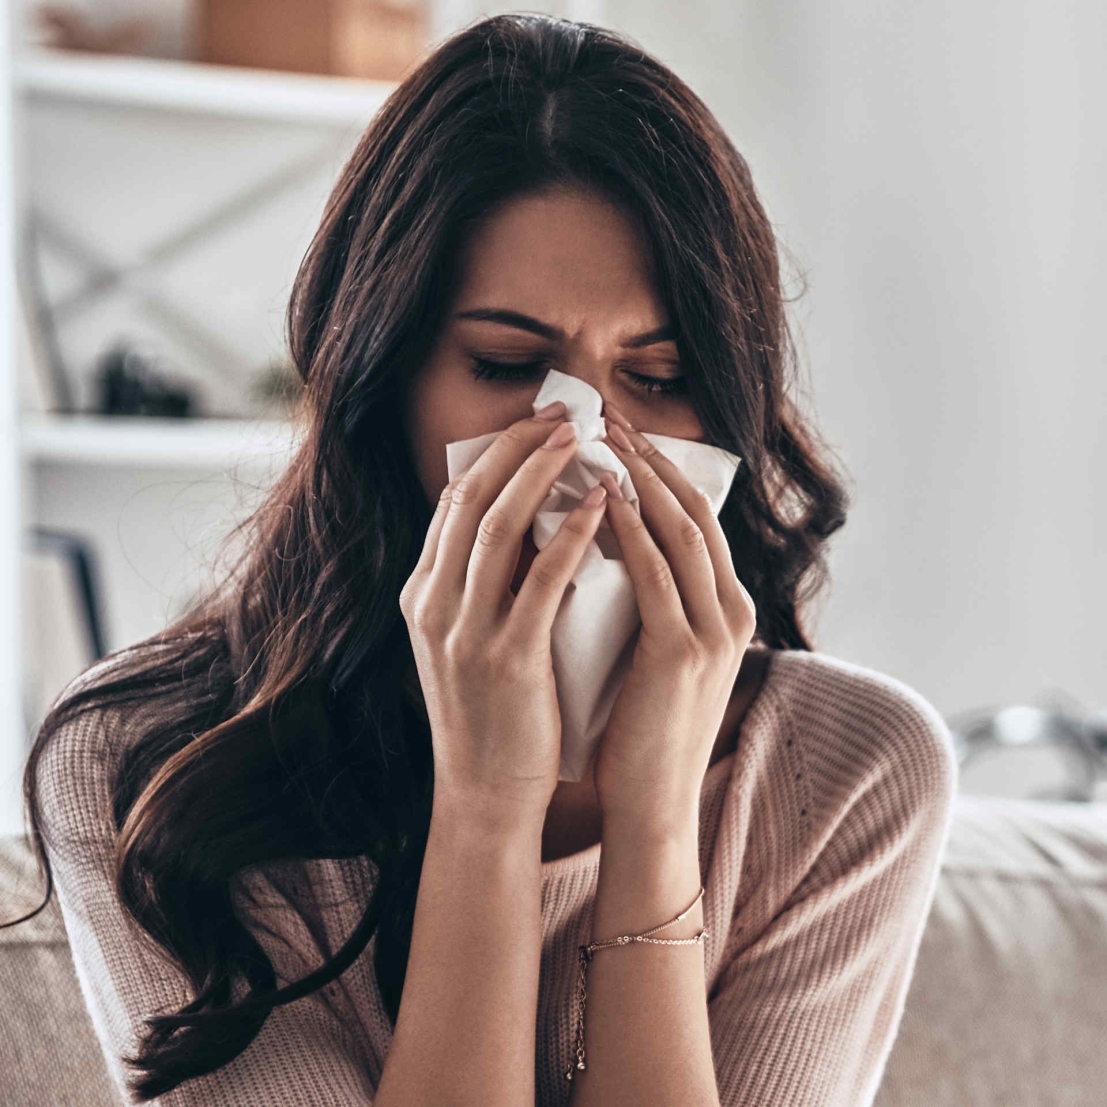 Une femme d'Asie du Sud malade, assise avec un mouchoir sur son nez en raison d'une allergie.